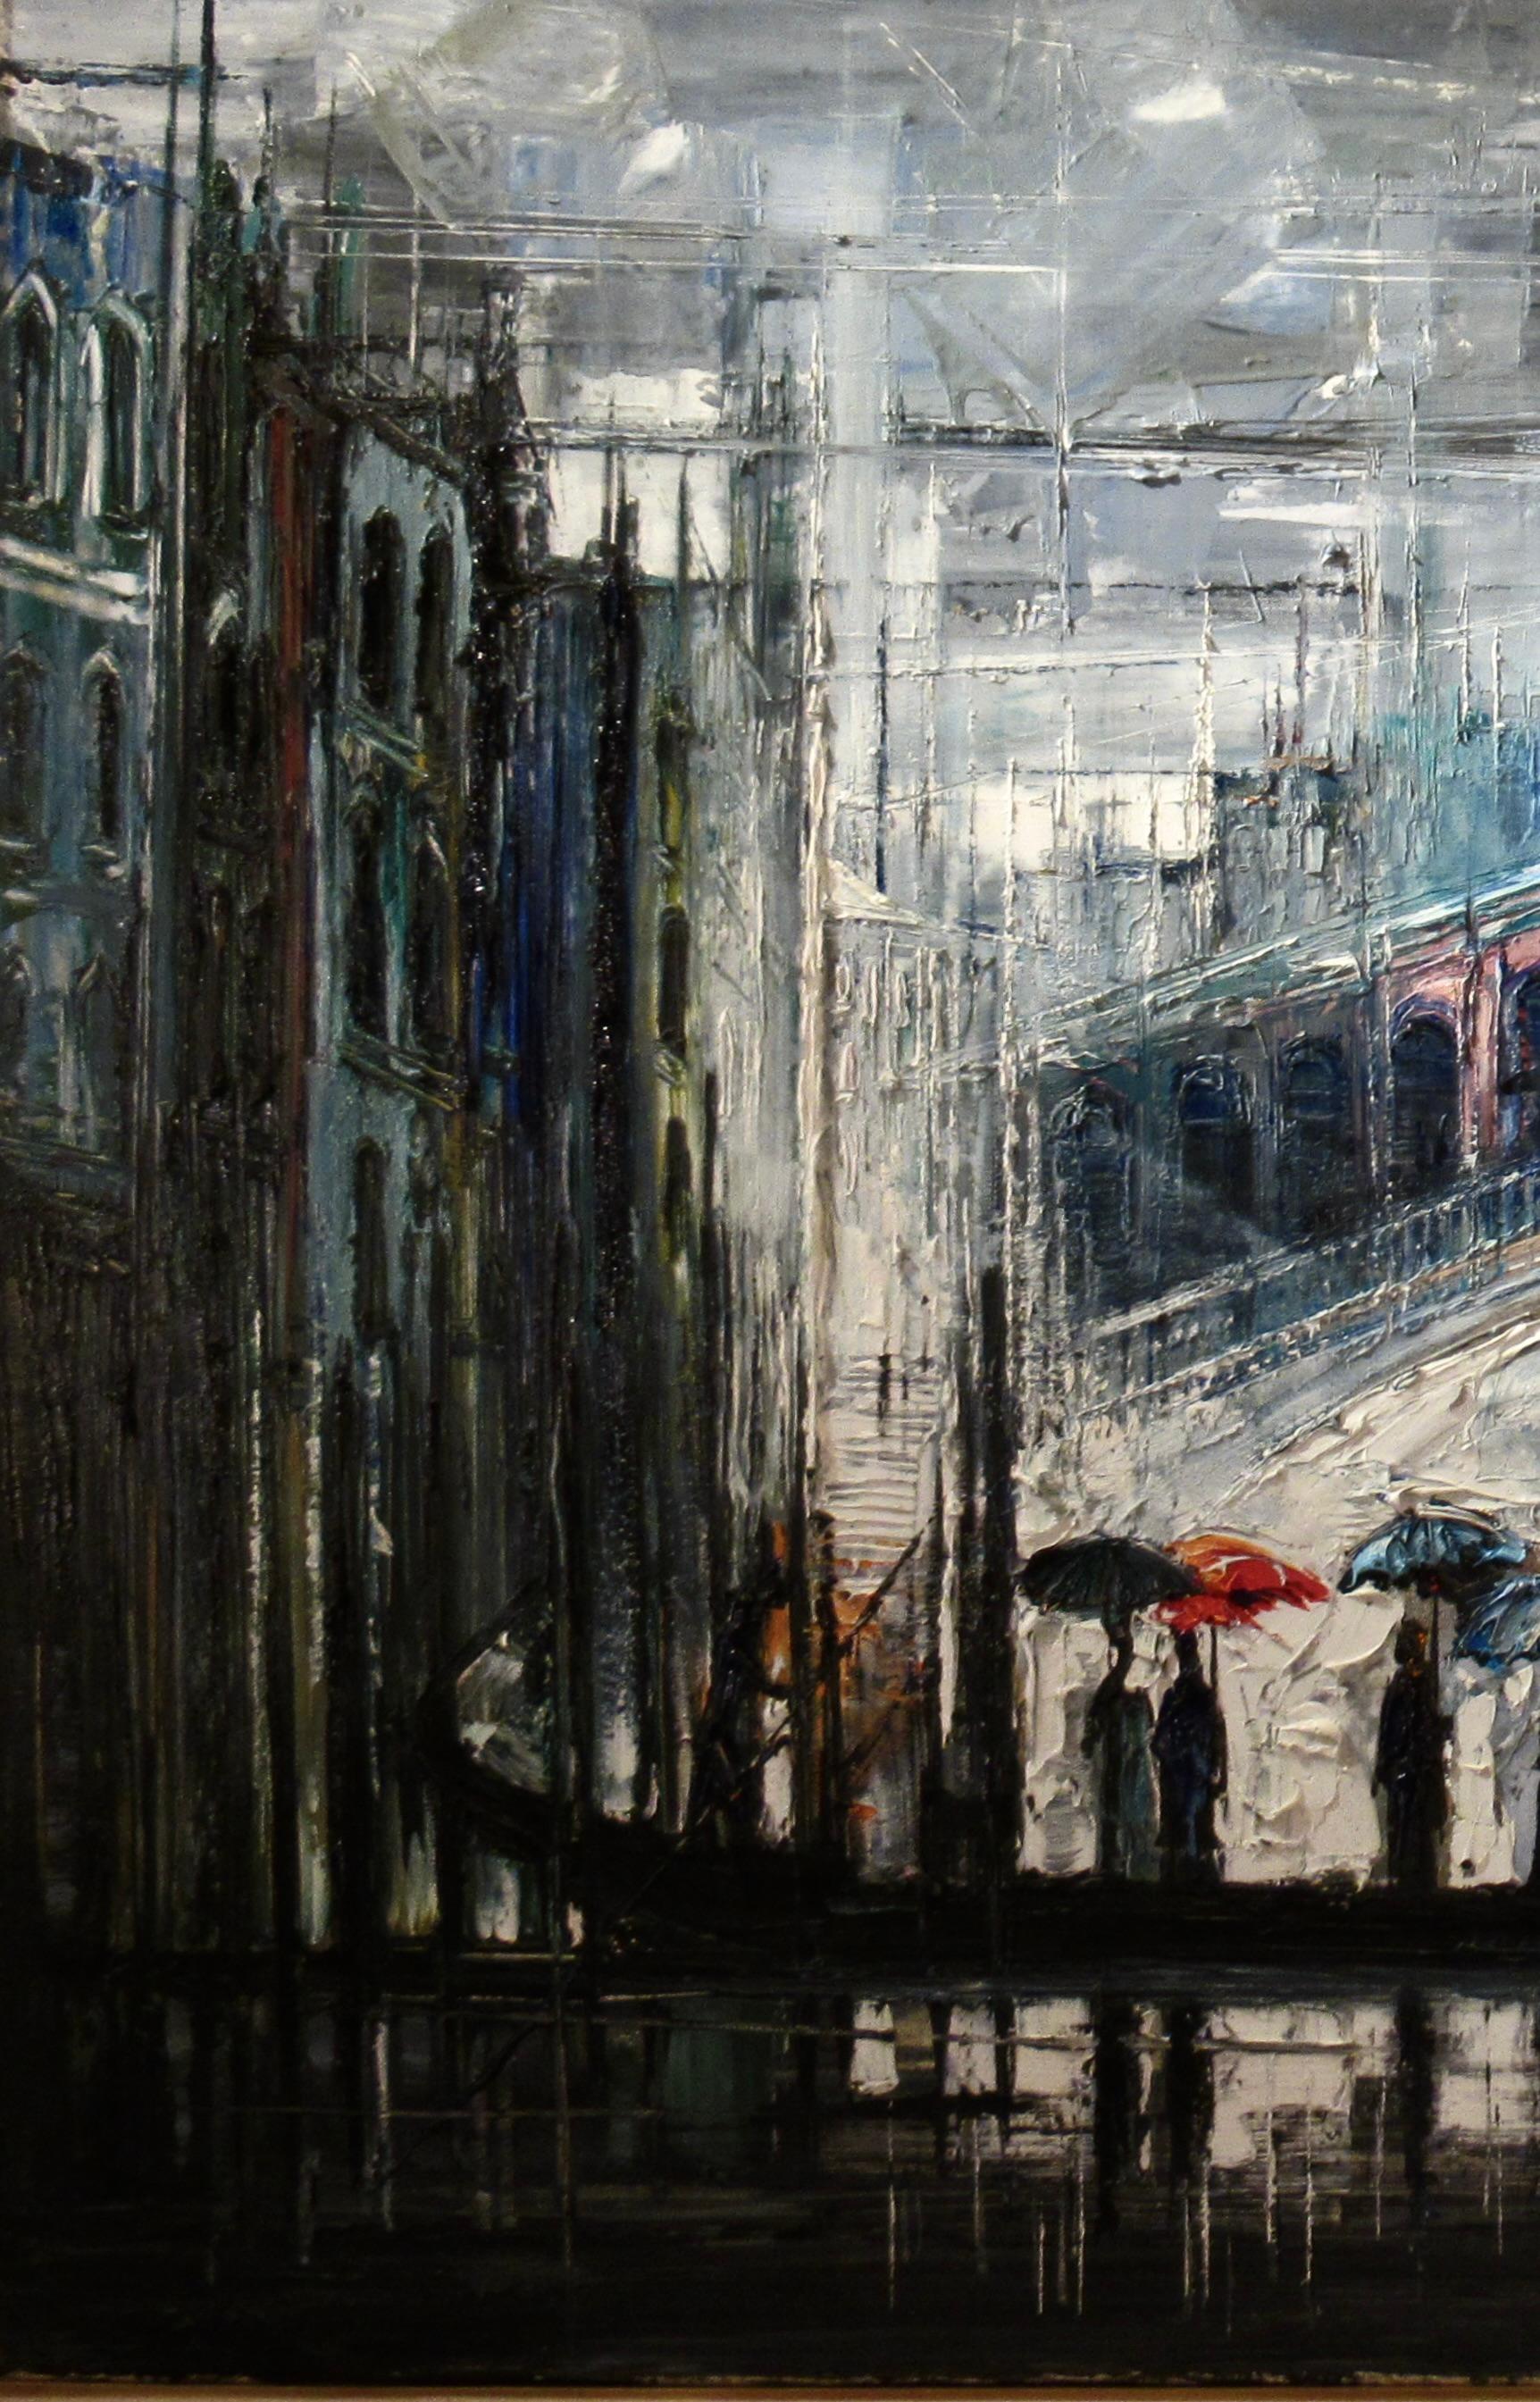 Venice - Impressionist Painting by Regis Bouvier de Cachard